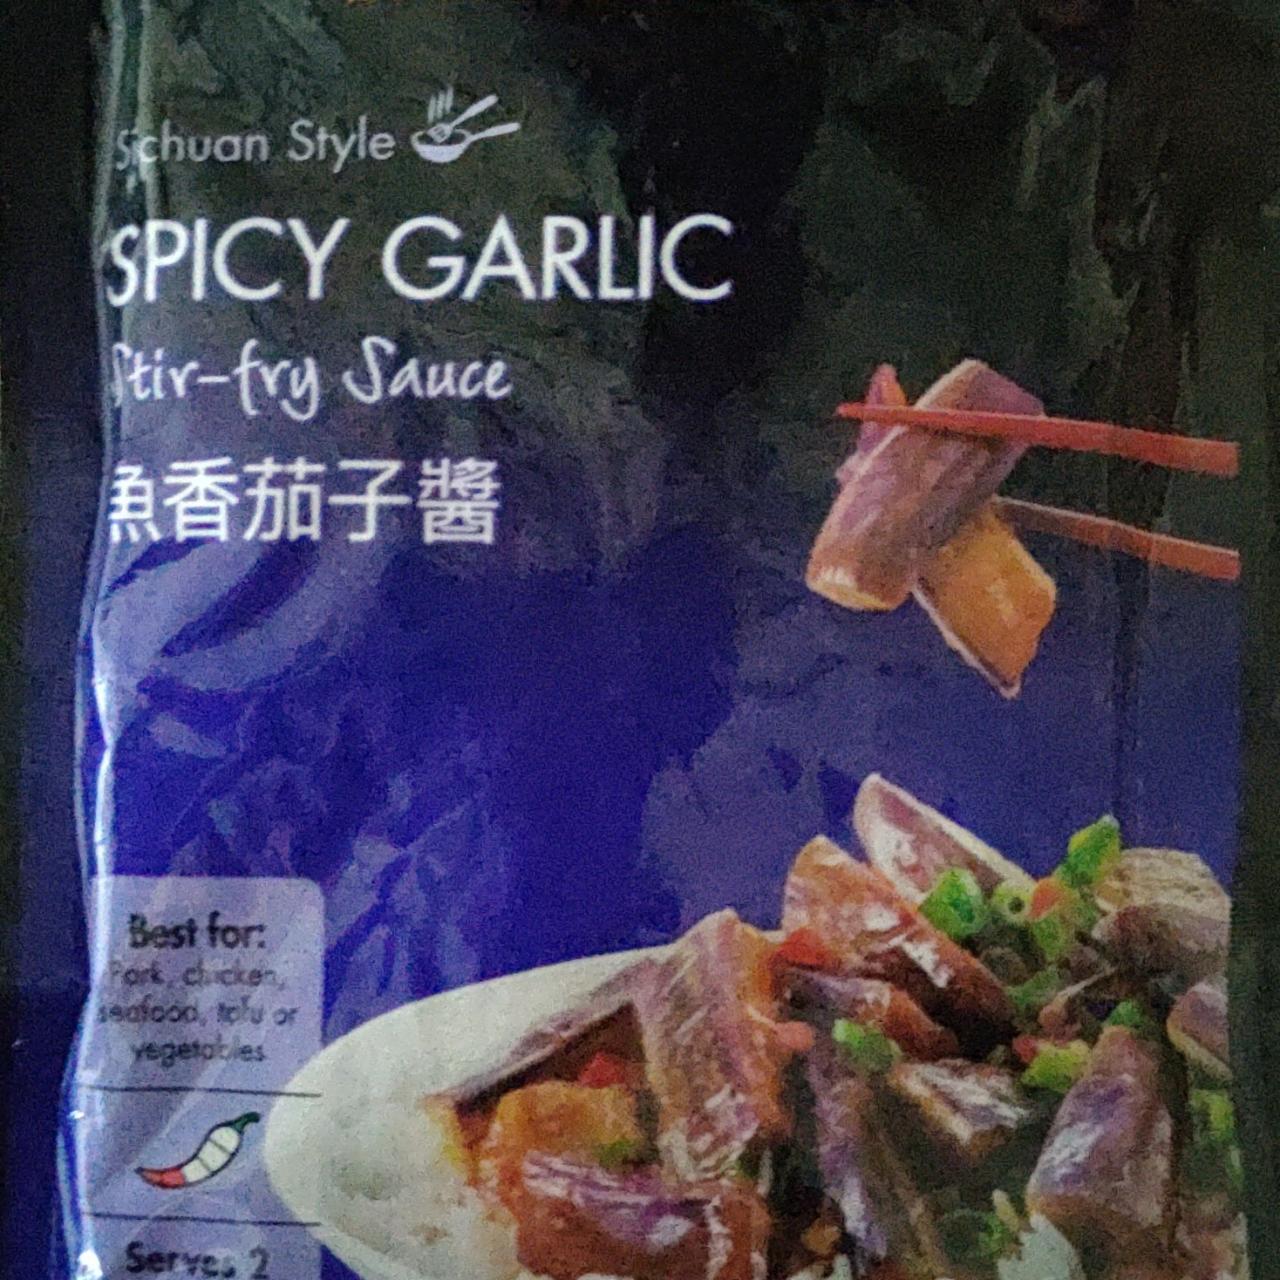 Fotografie - Spicy Garlic Stir-fry Sauce Schuan Style